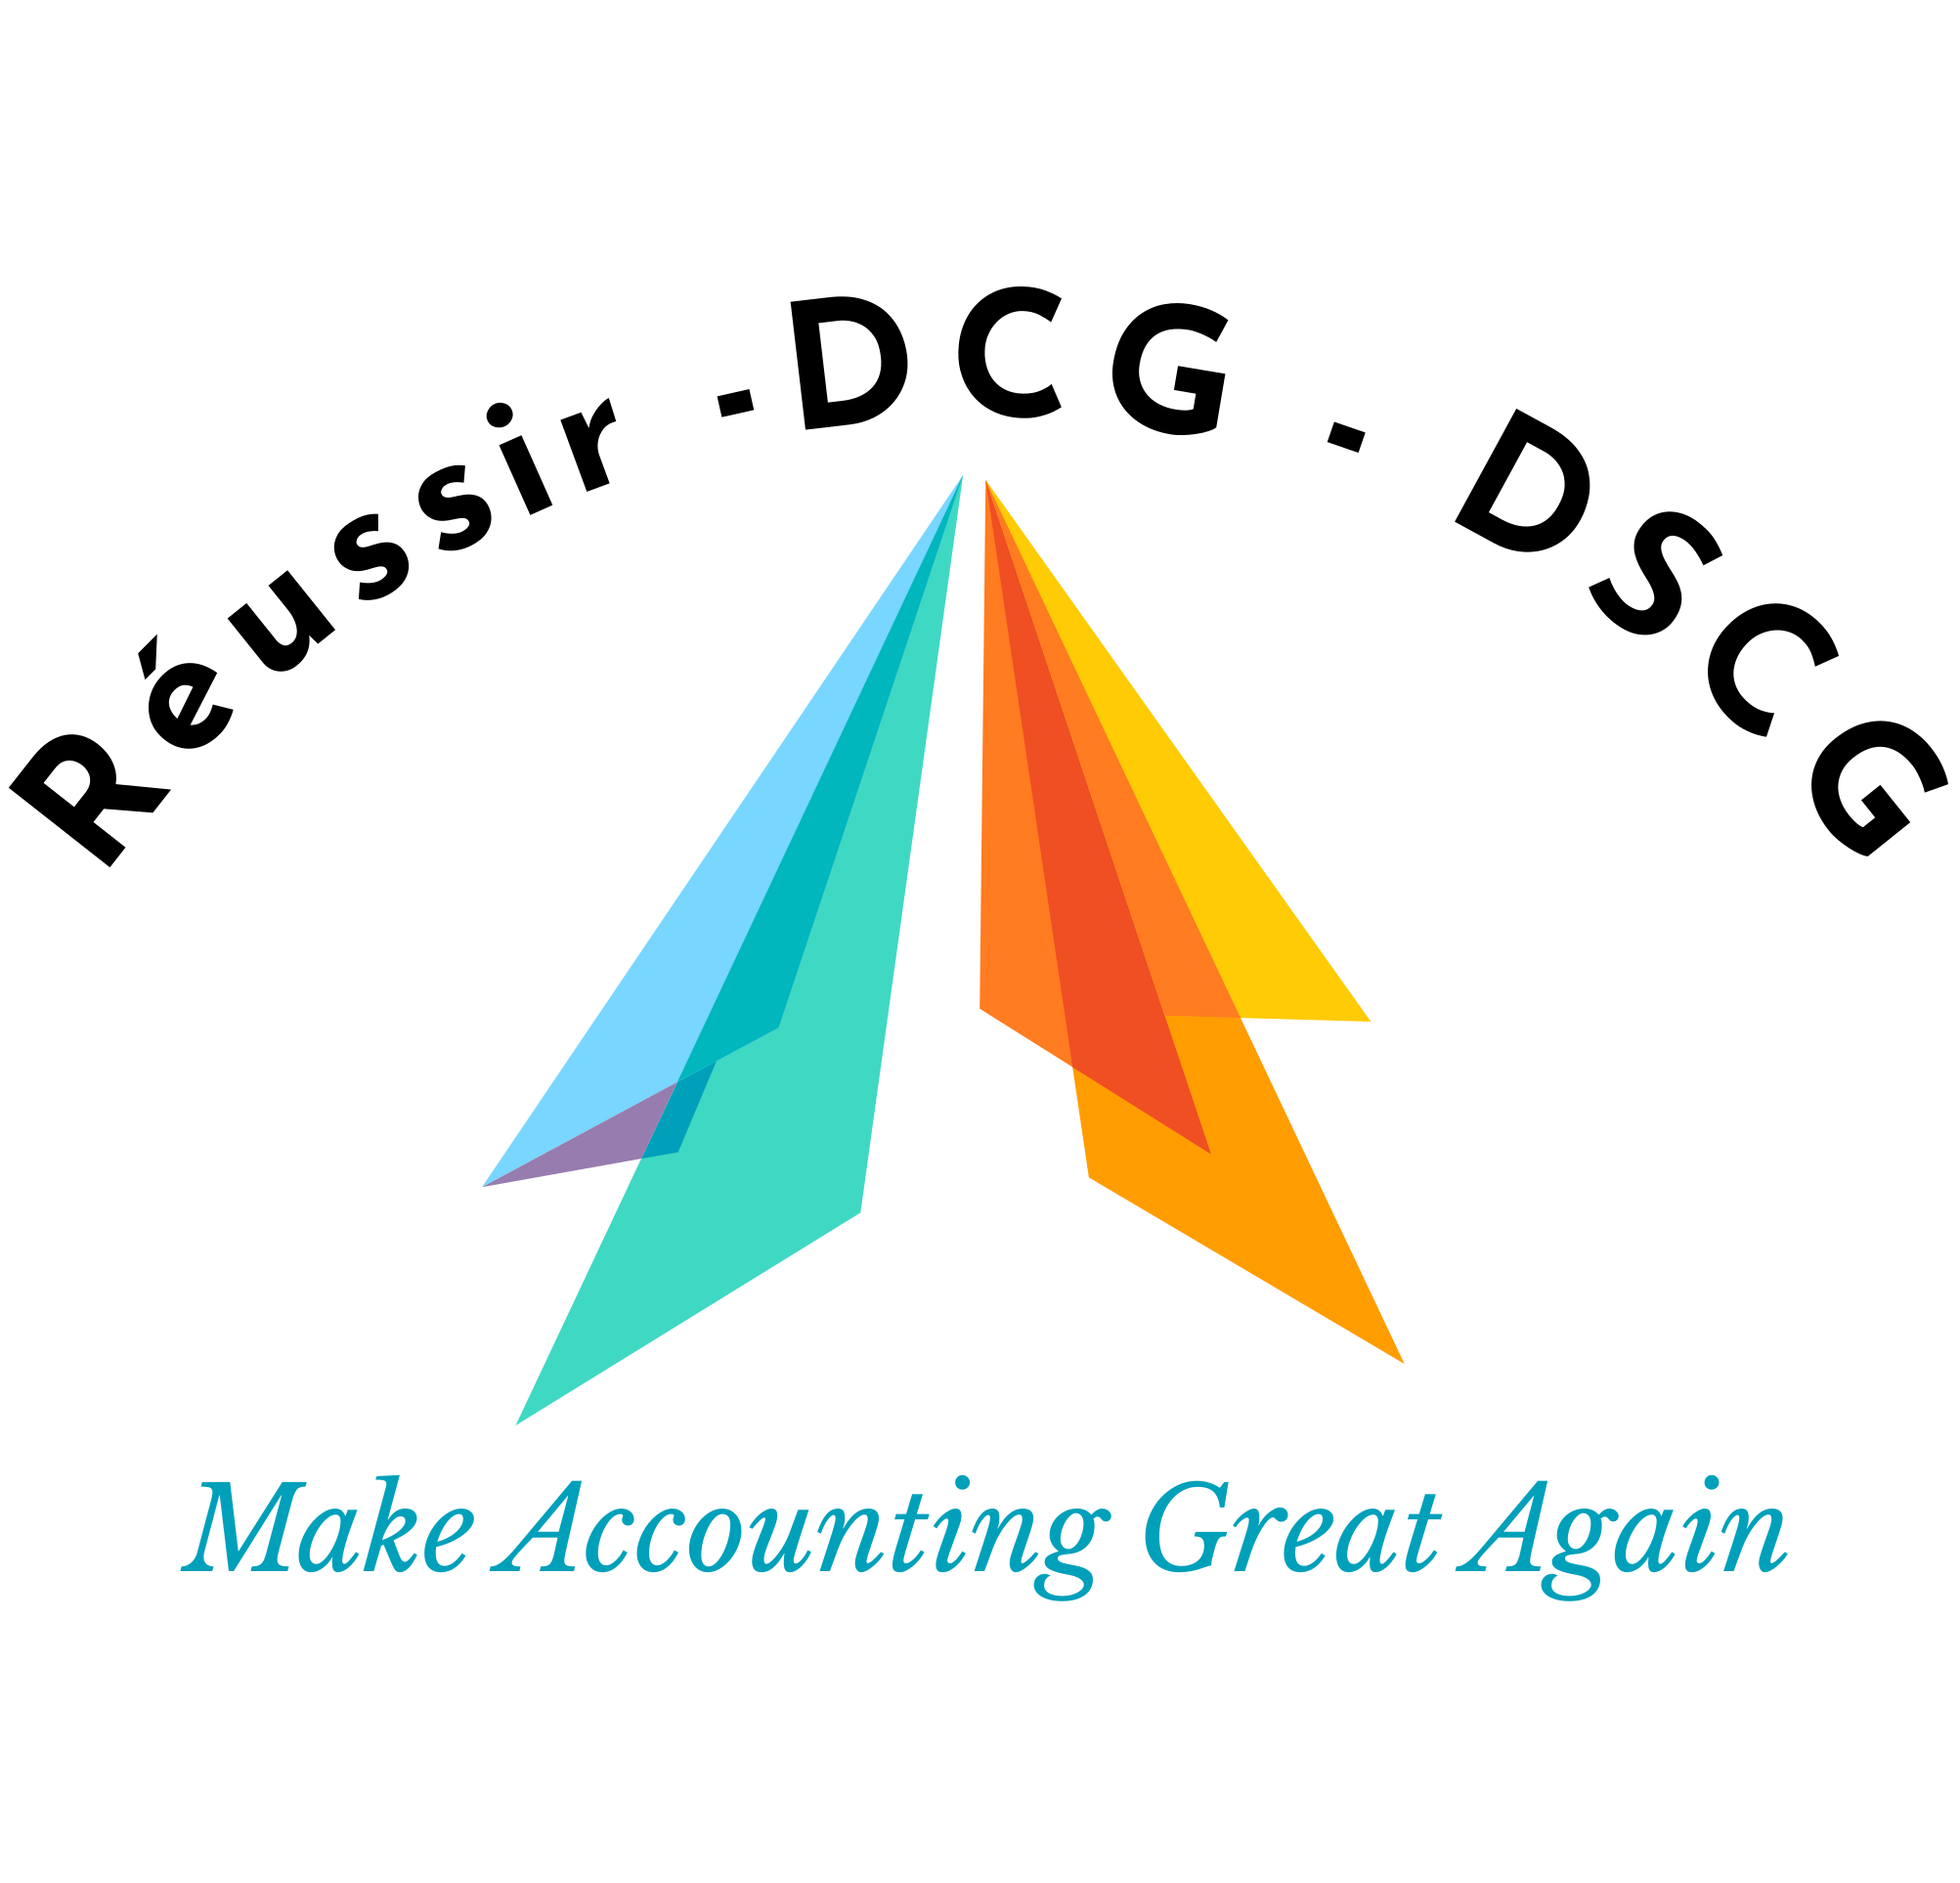 Réussir -DCG - DSCG